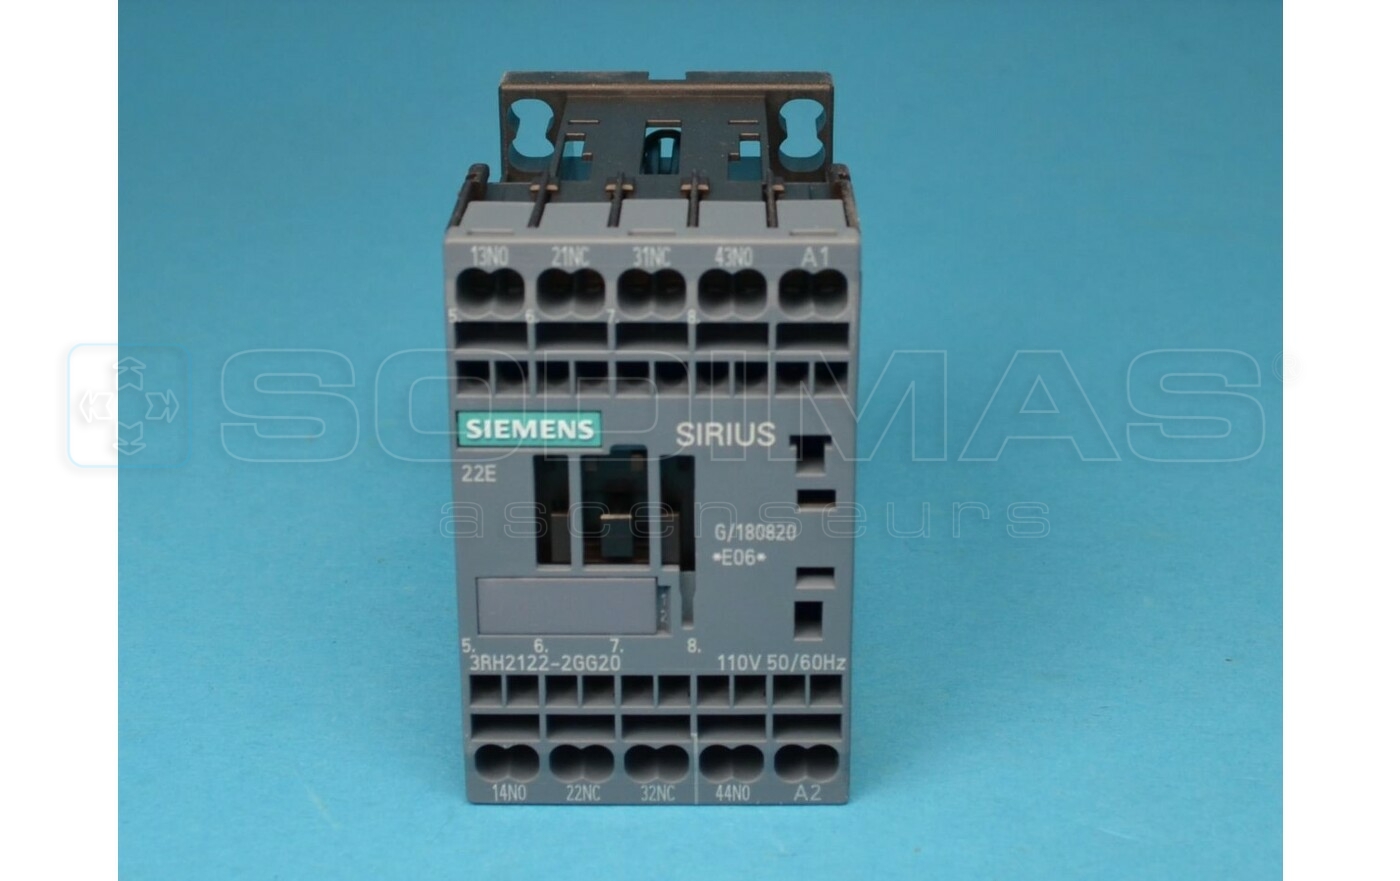 Contacteur Siemens 3RH2122 - 2GG20 - 110 VCA - 2NO-2NC Remplace 3RH1122 GAA613KL1